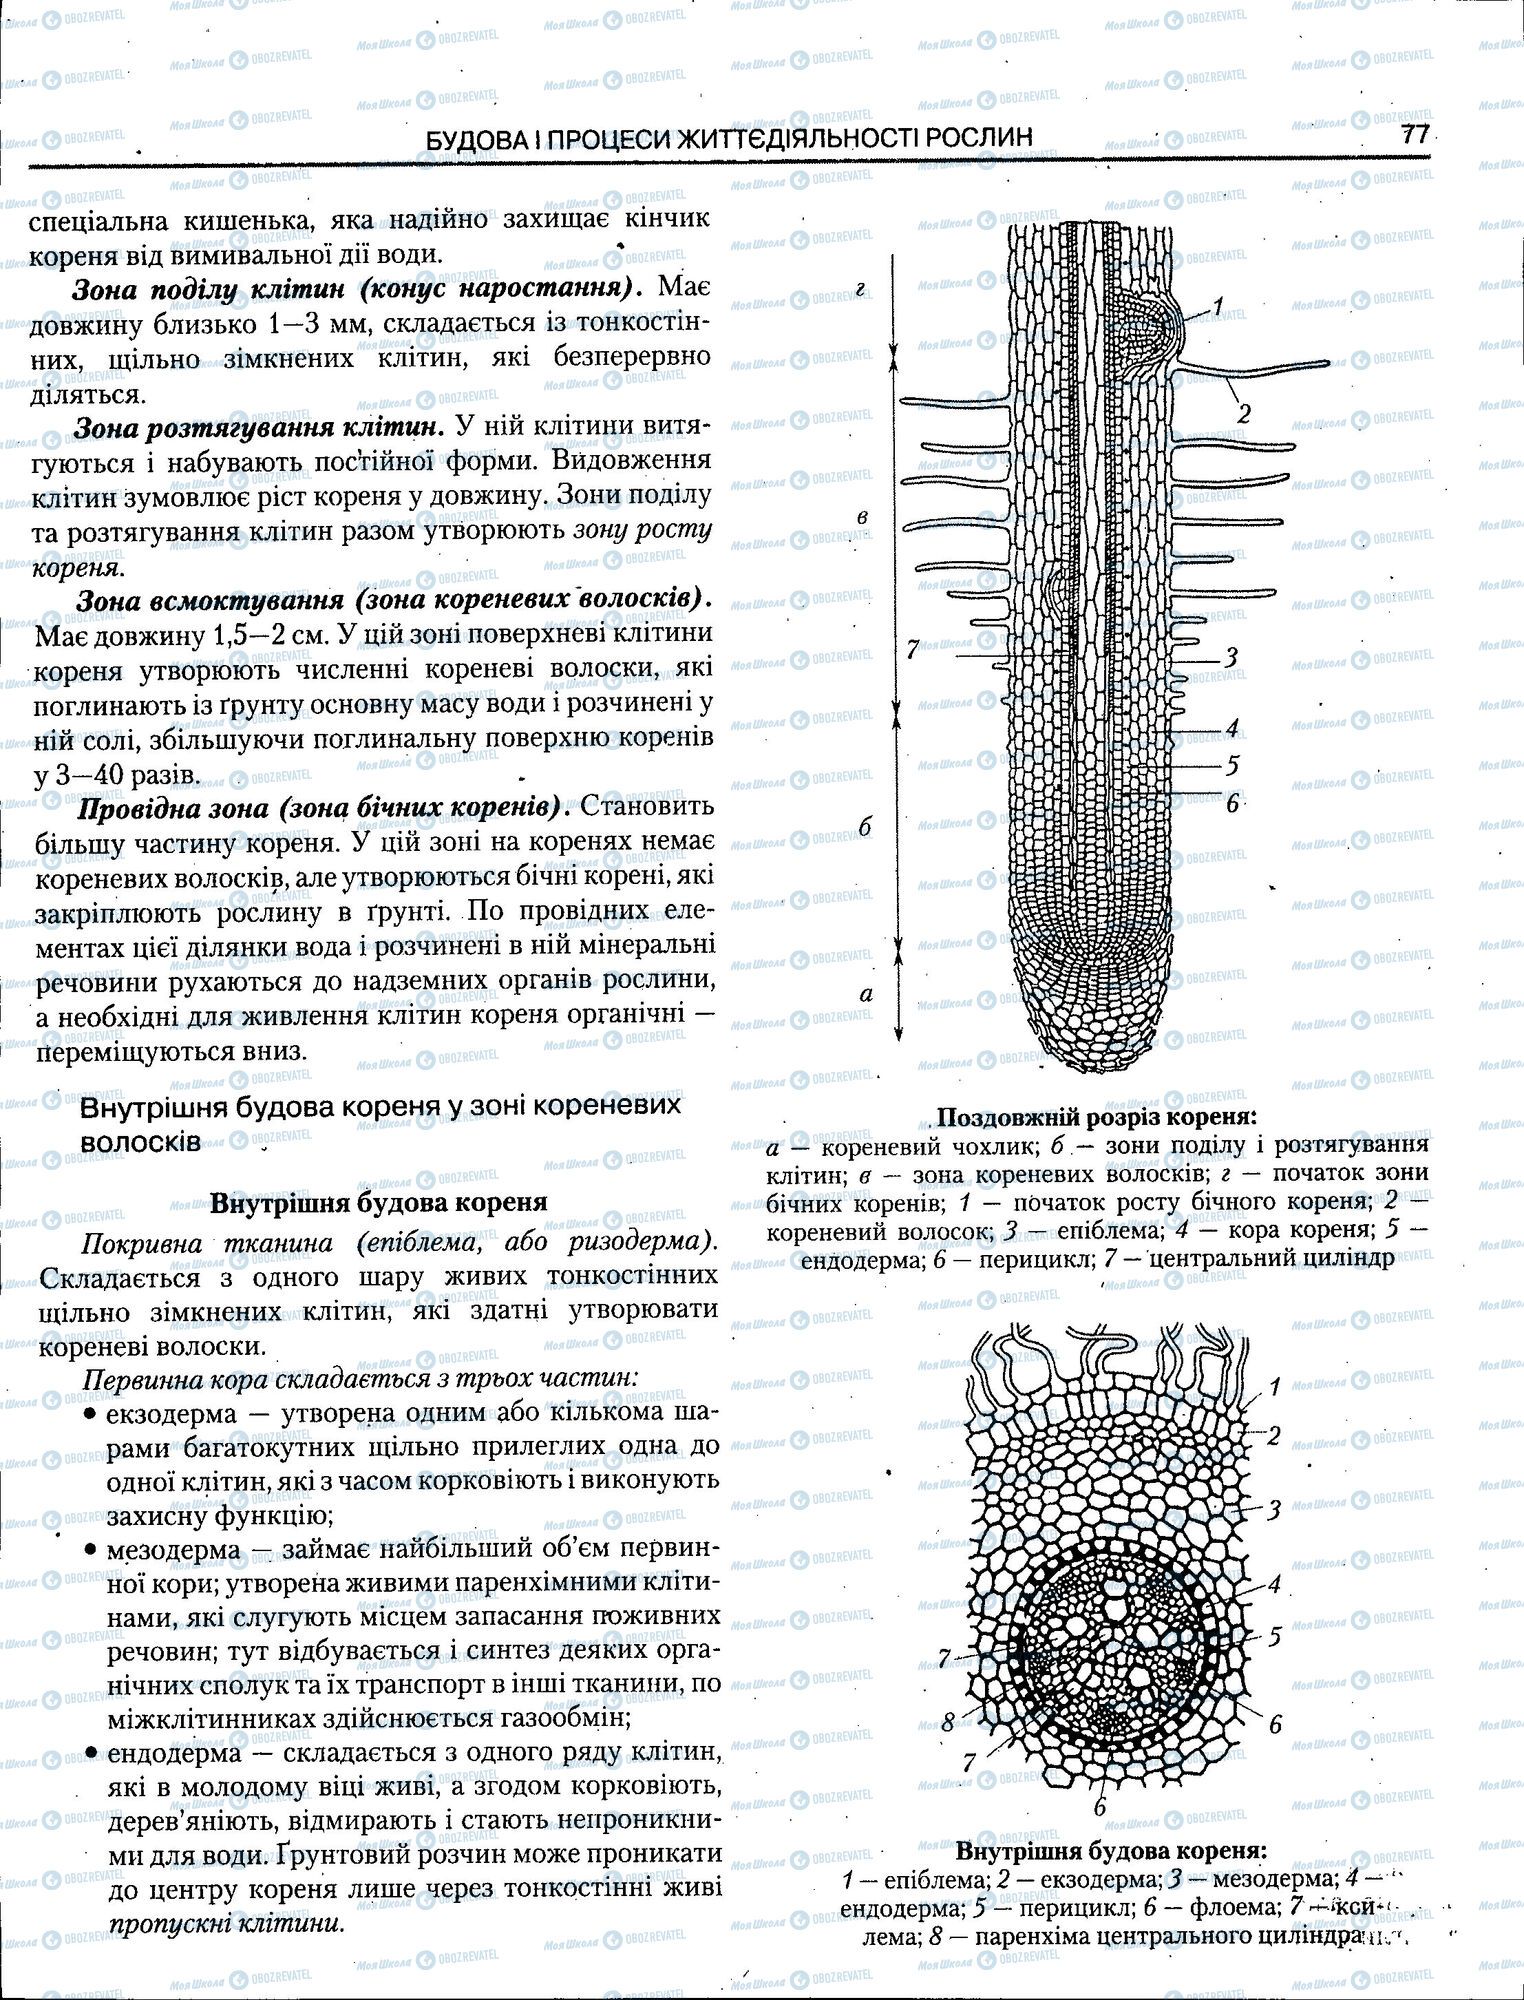 ЗНО Биология 11 класс страница 077